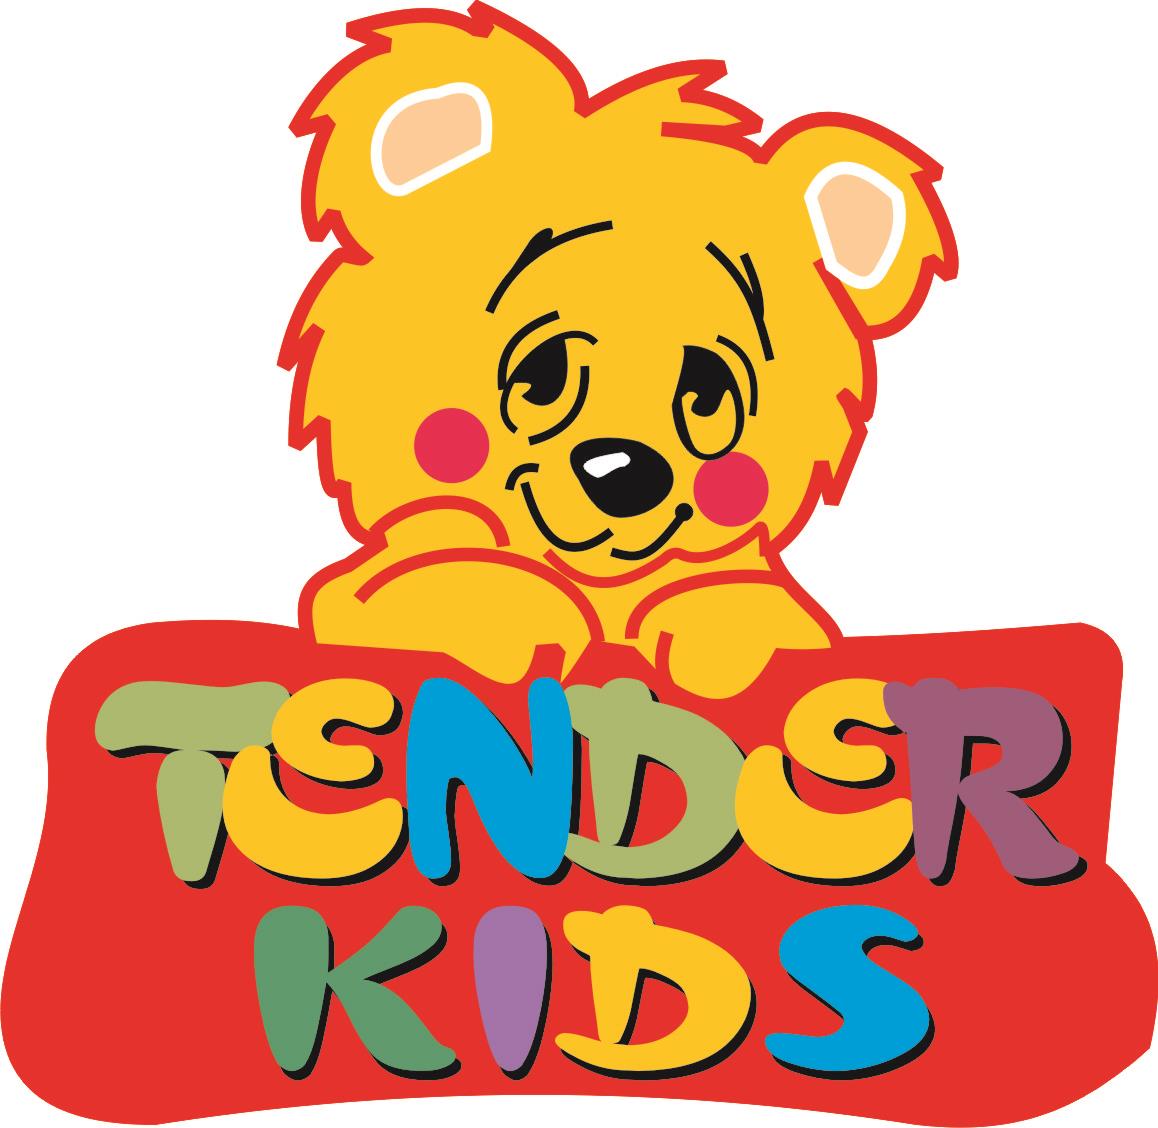 Tender Kids Play School